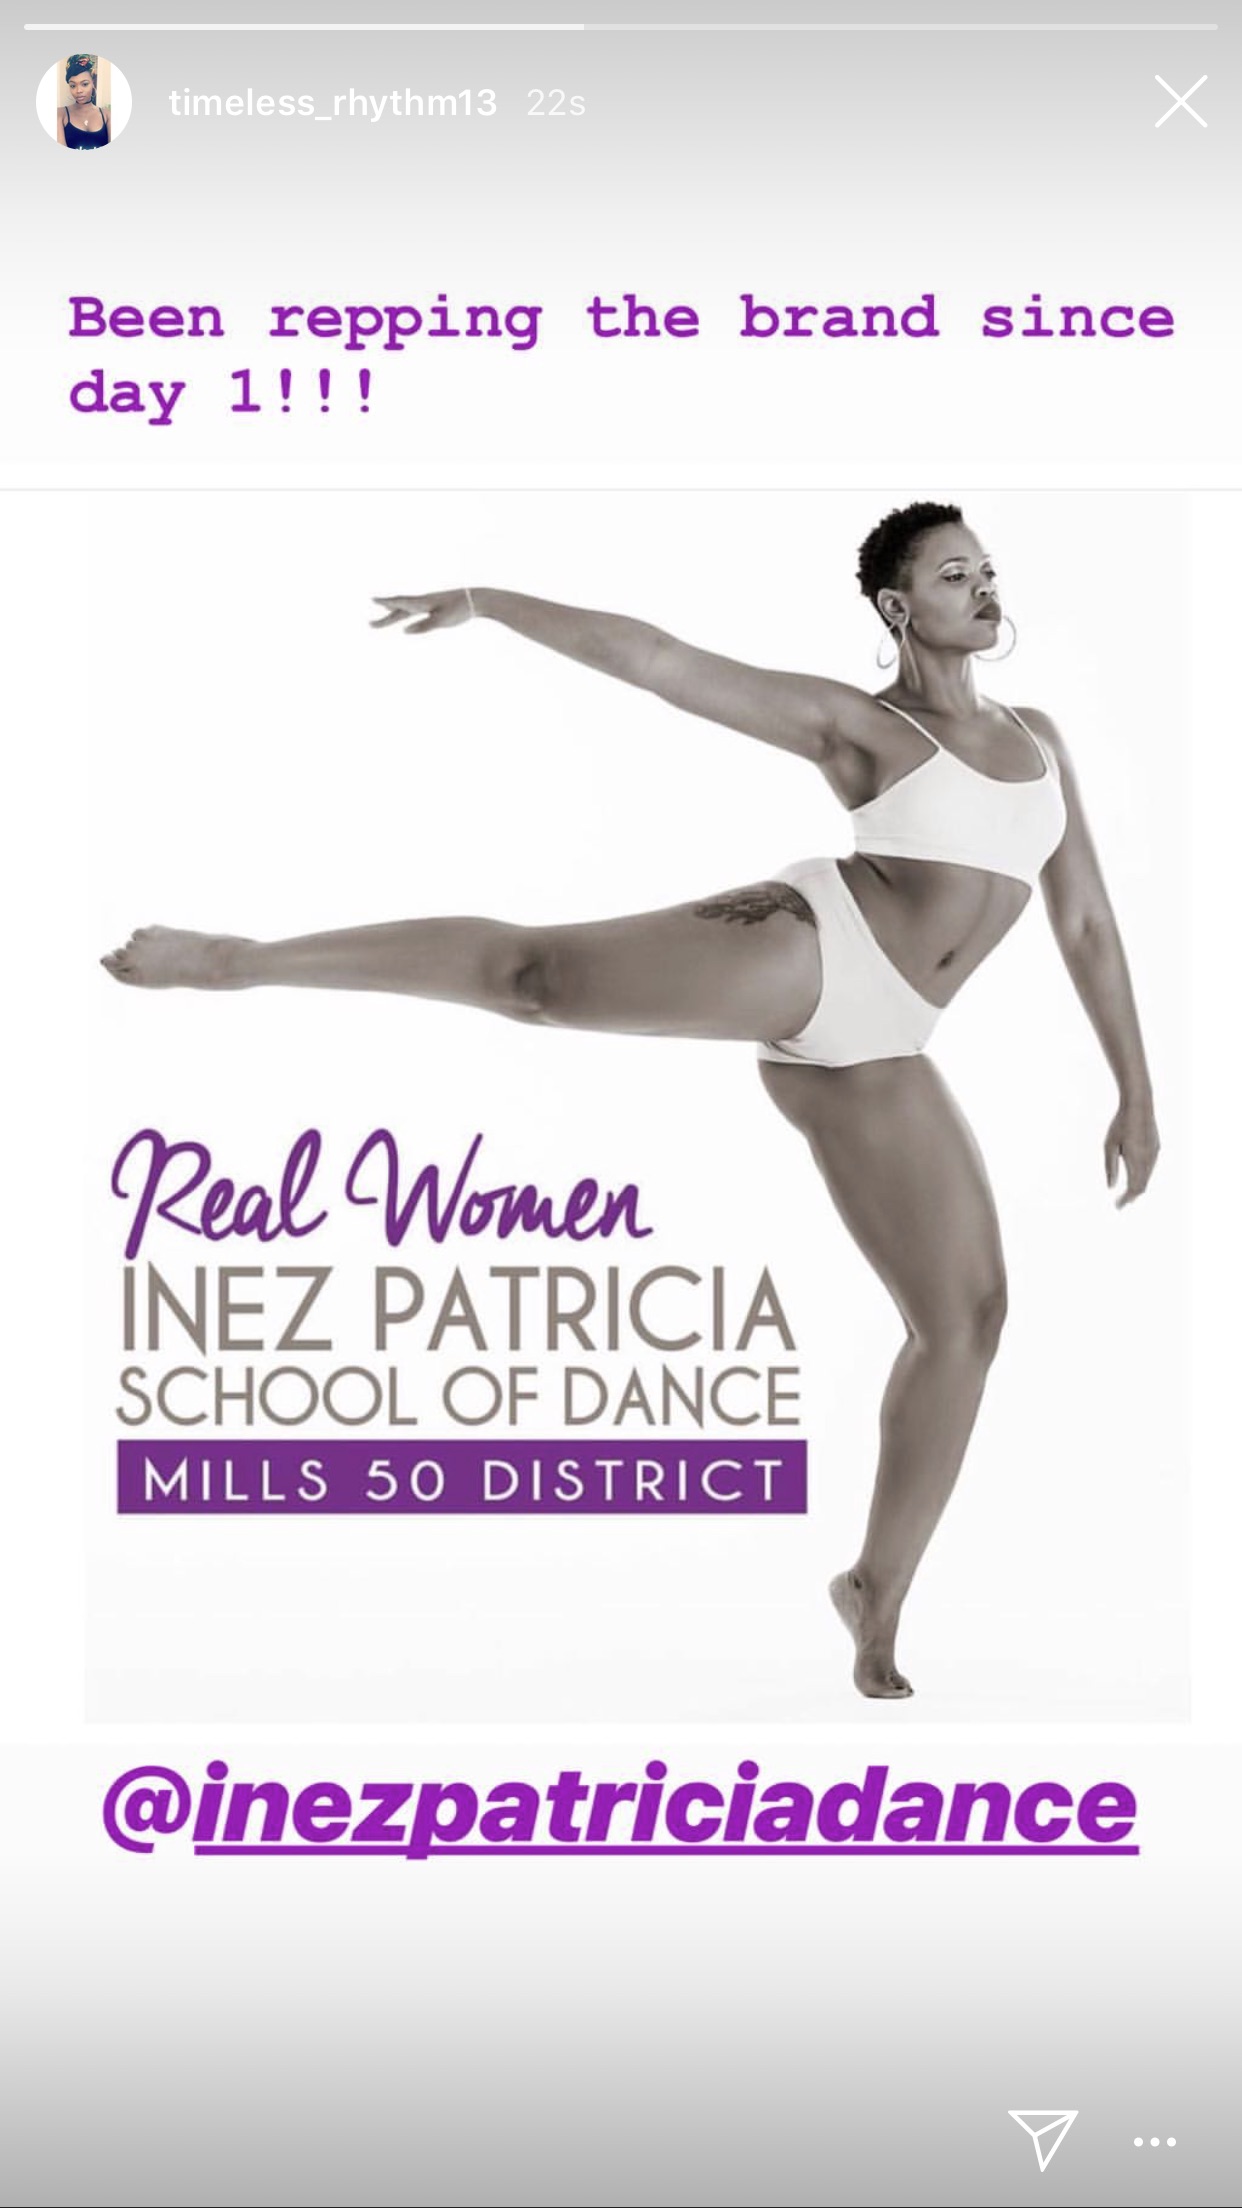 Inez Patricia School of Dance